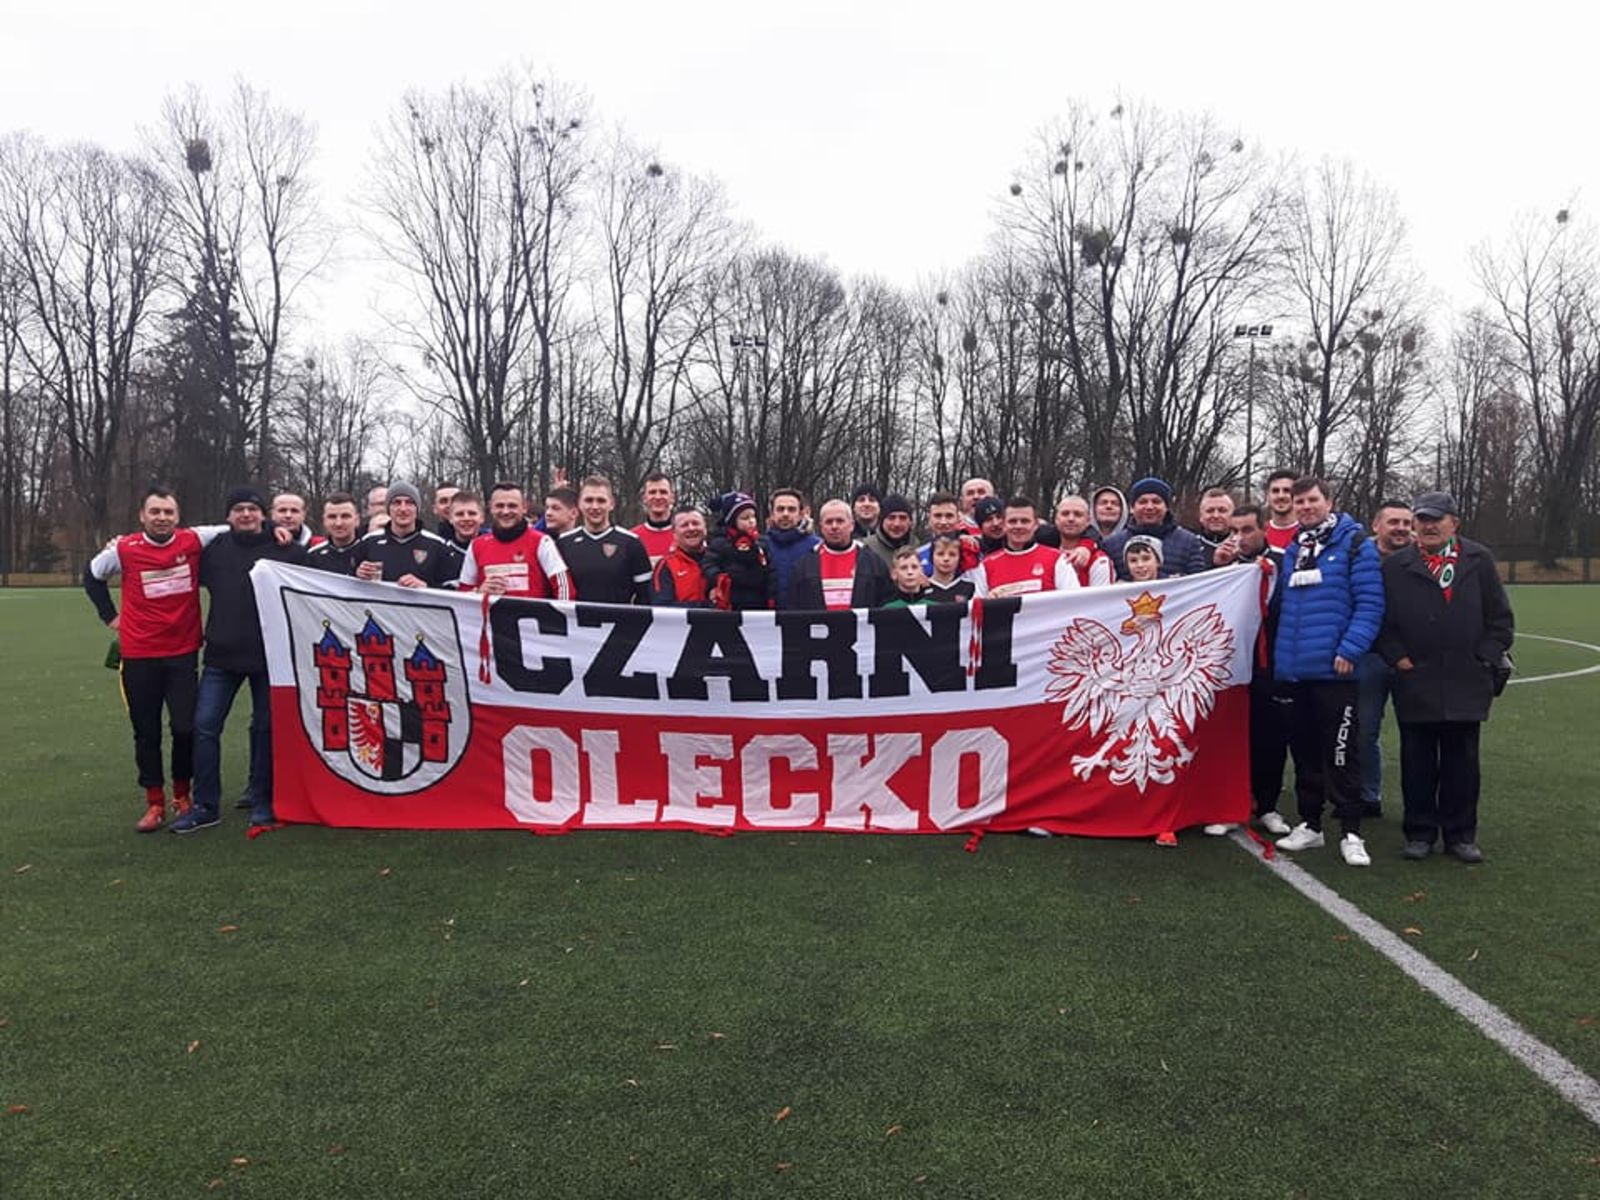 Czarni Olecko są liderem ligi okręgowej. Fot. facebook.com/CzarniOlecko